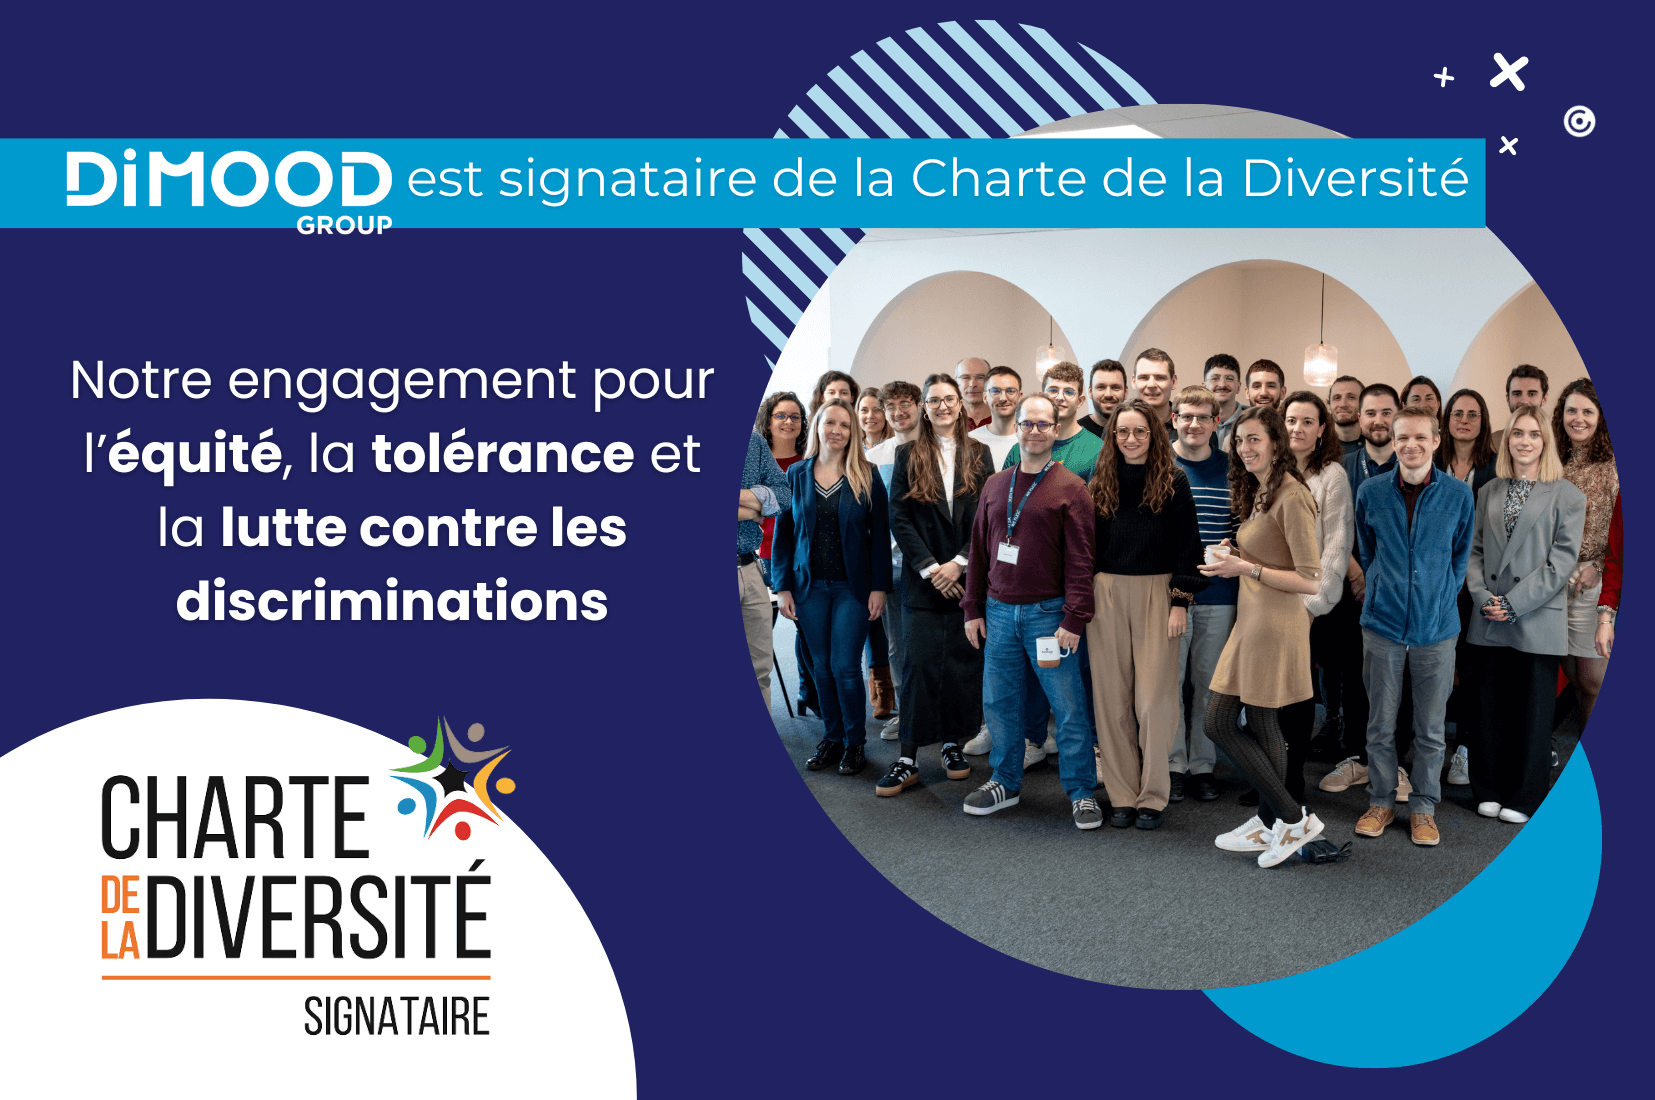 Le Groupe Dimood est signataire de la charte de la diversité